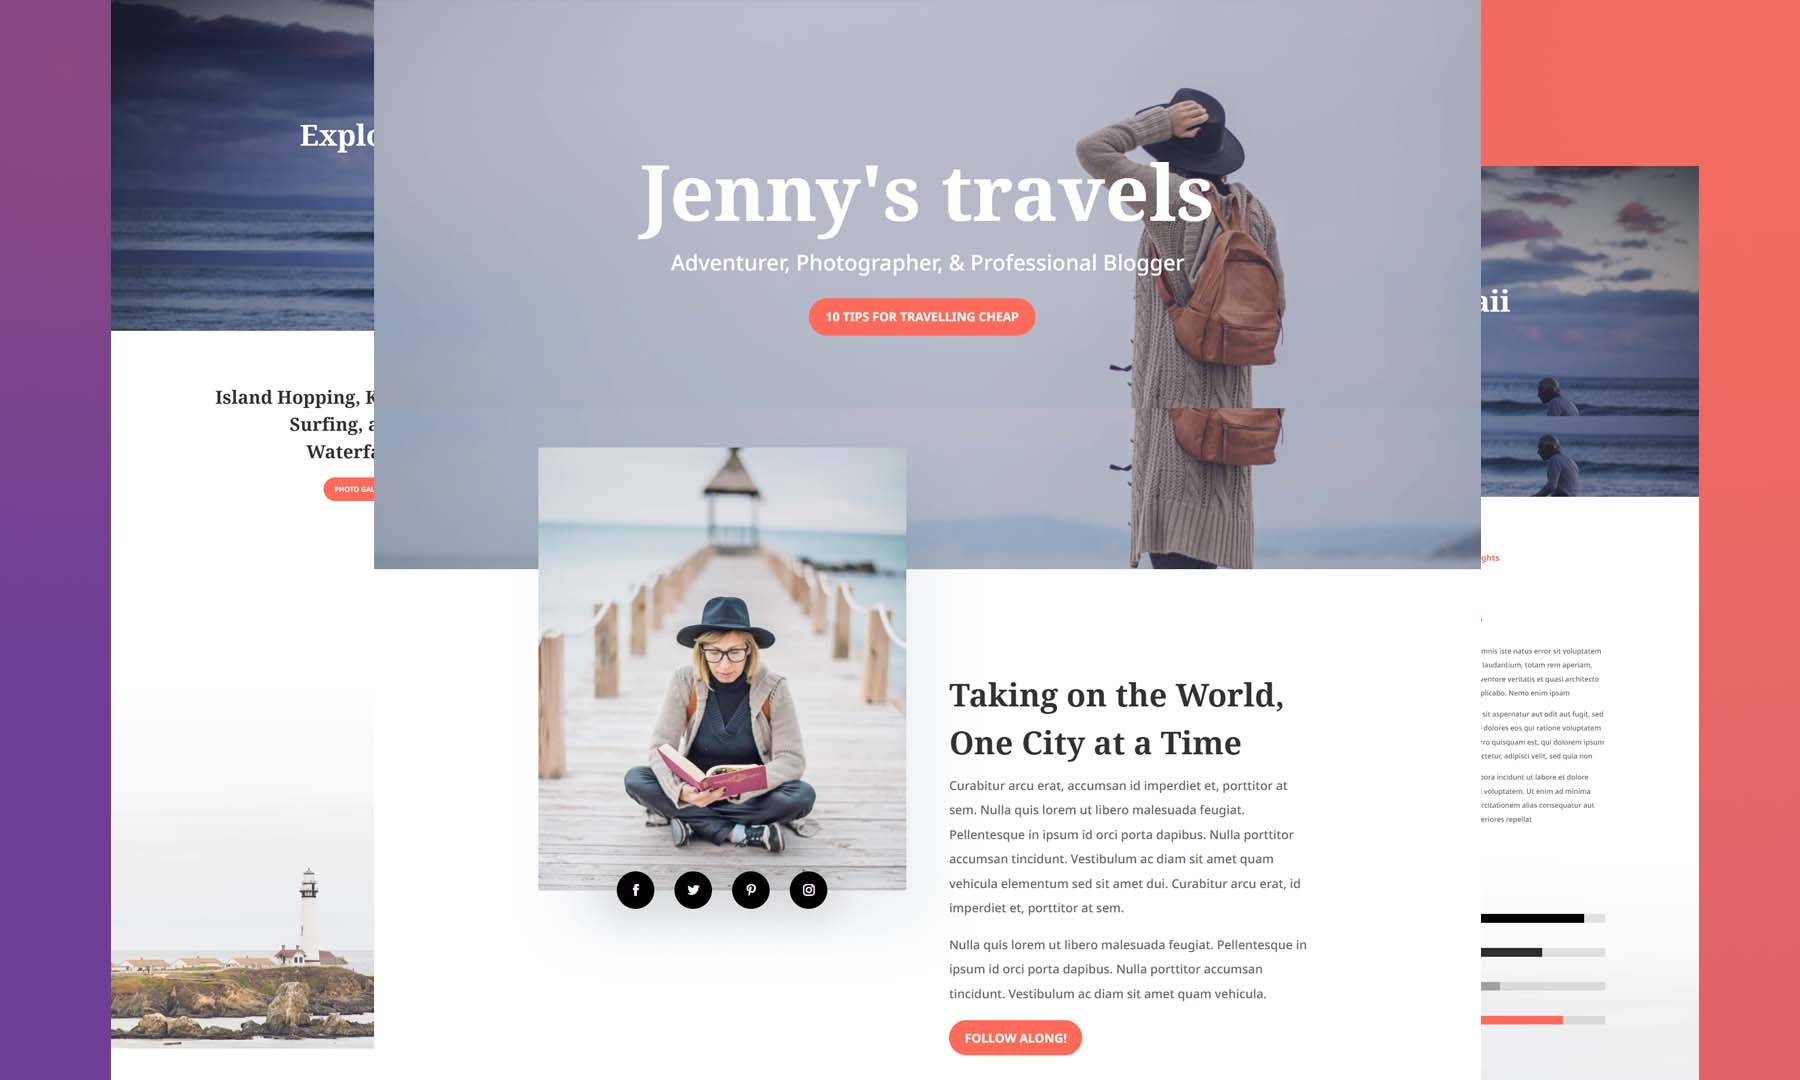 En iyi seyahat WordPress temalarından biri olan Divi